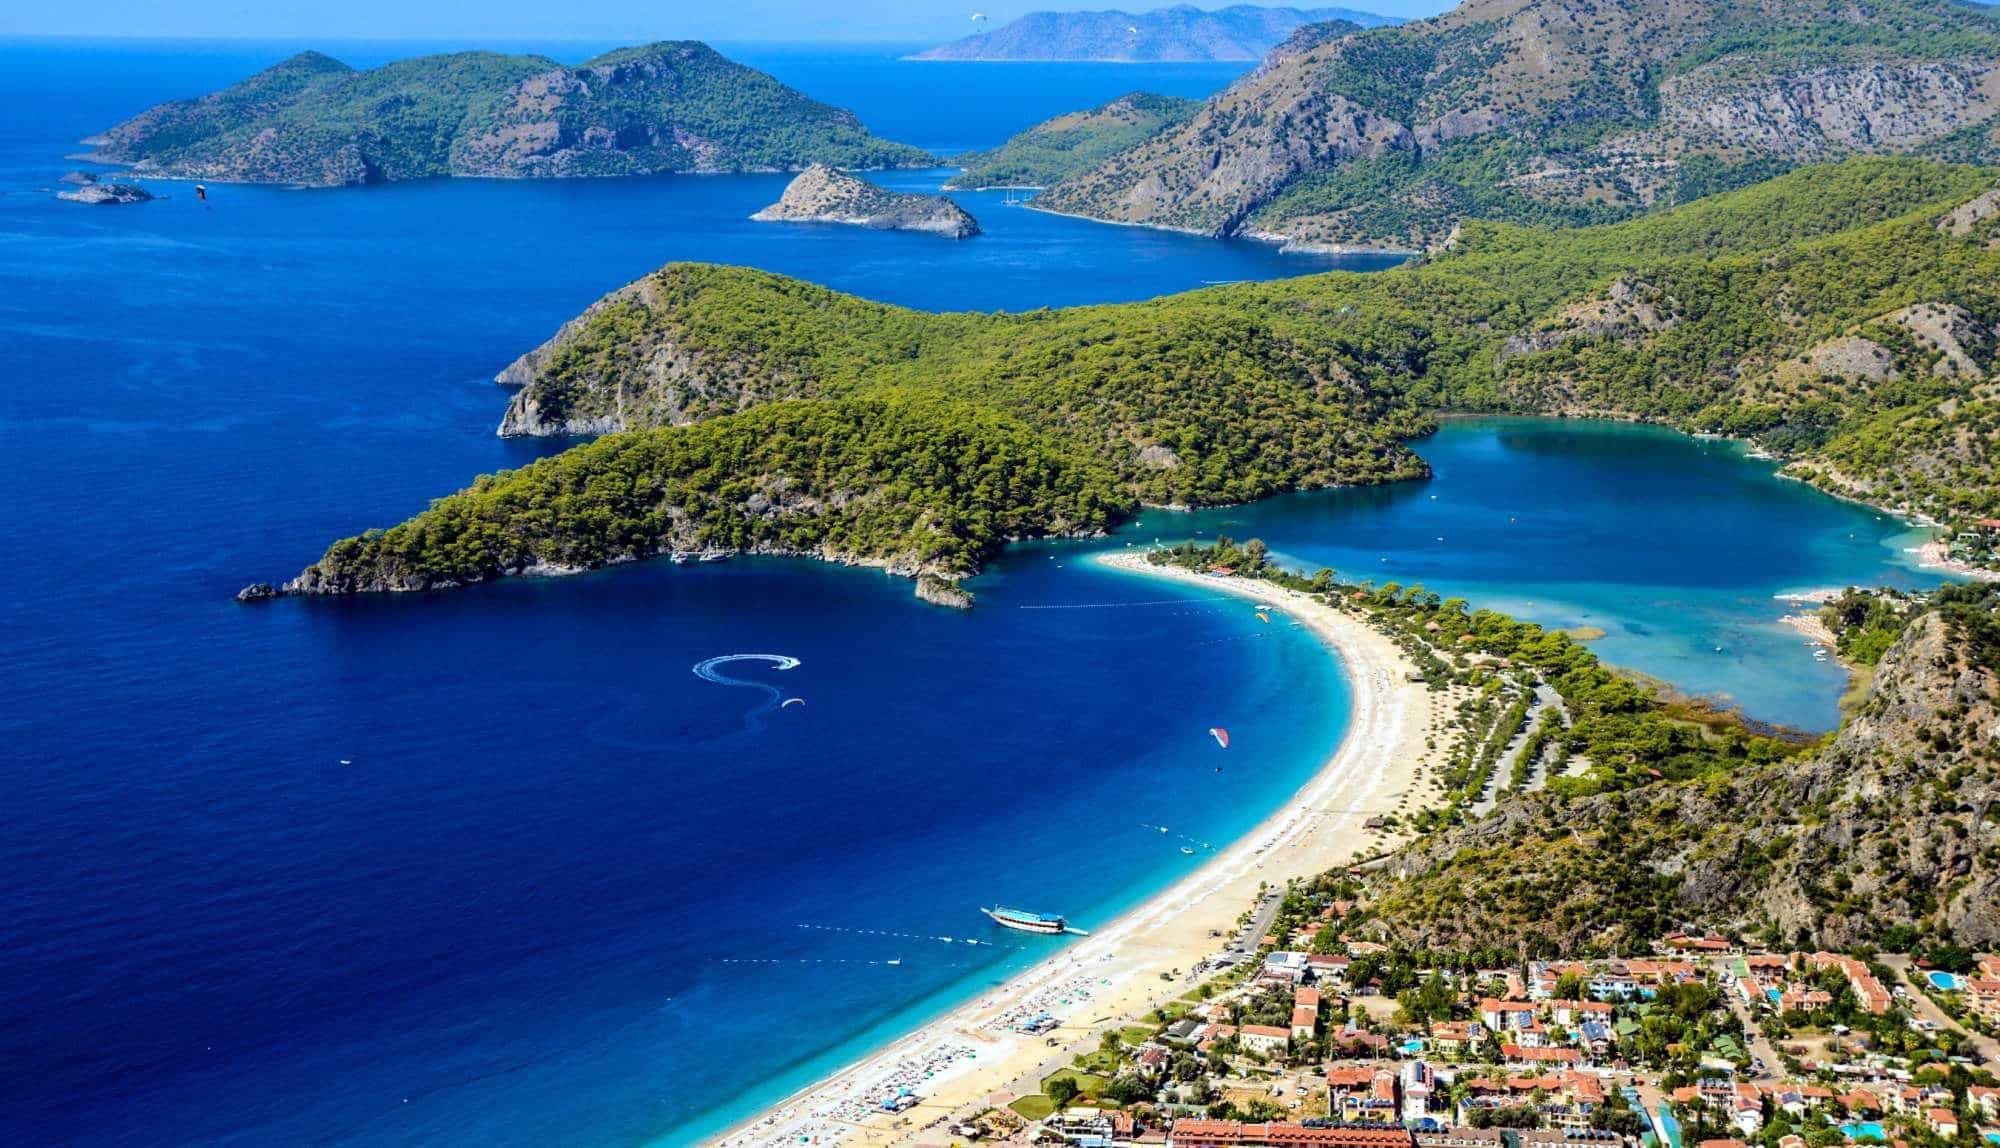 Курорты турции на эгейском побережье: что выбрать для семейного летнего отдыха в 2022 году